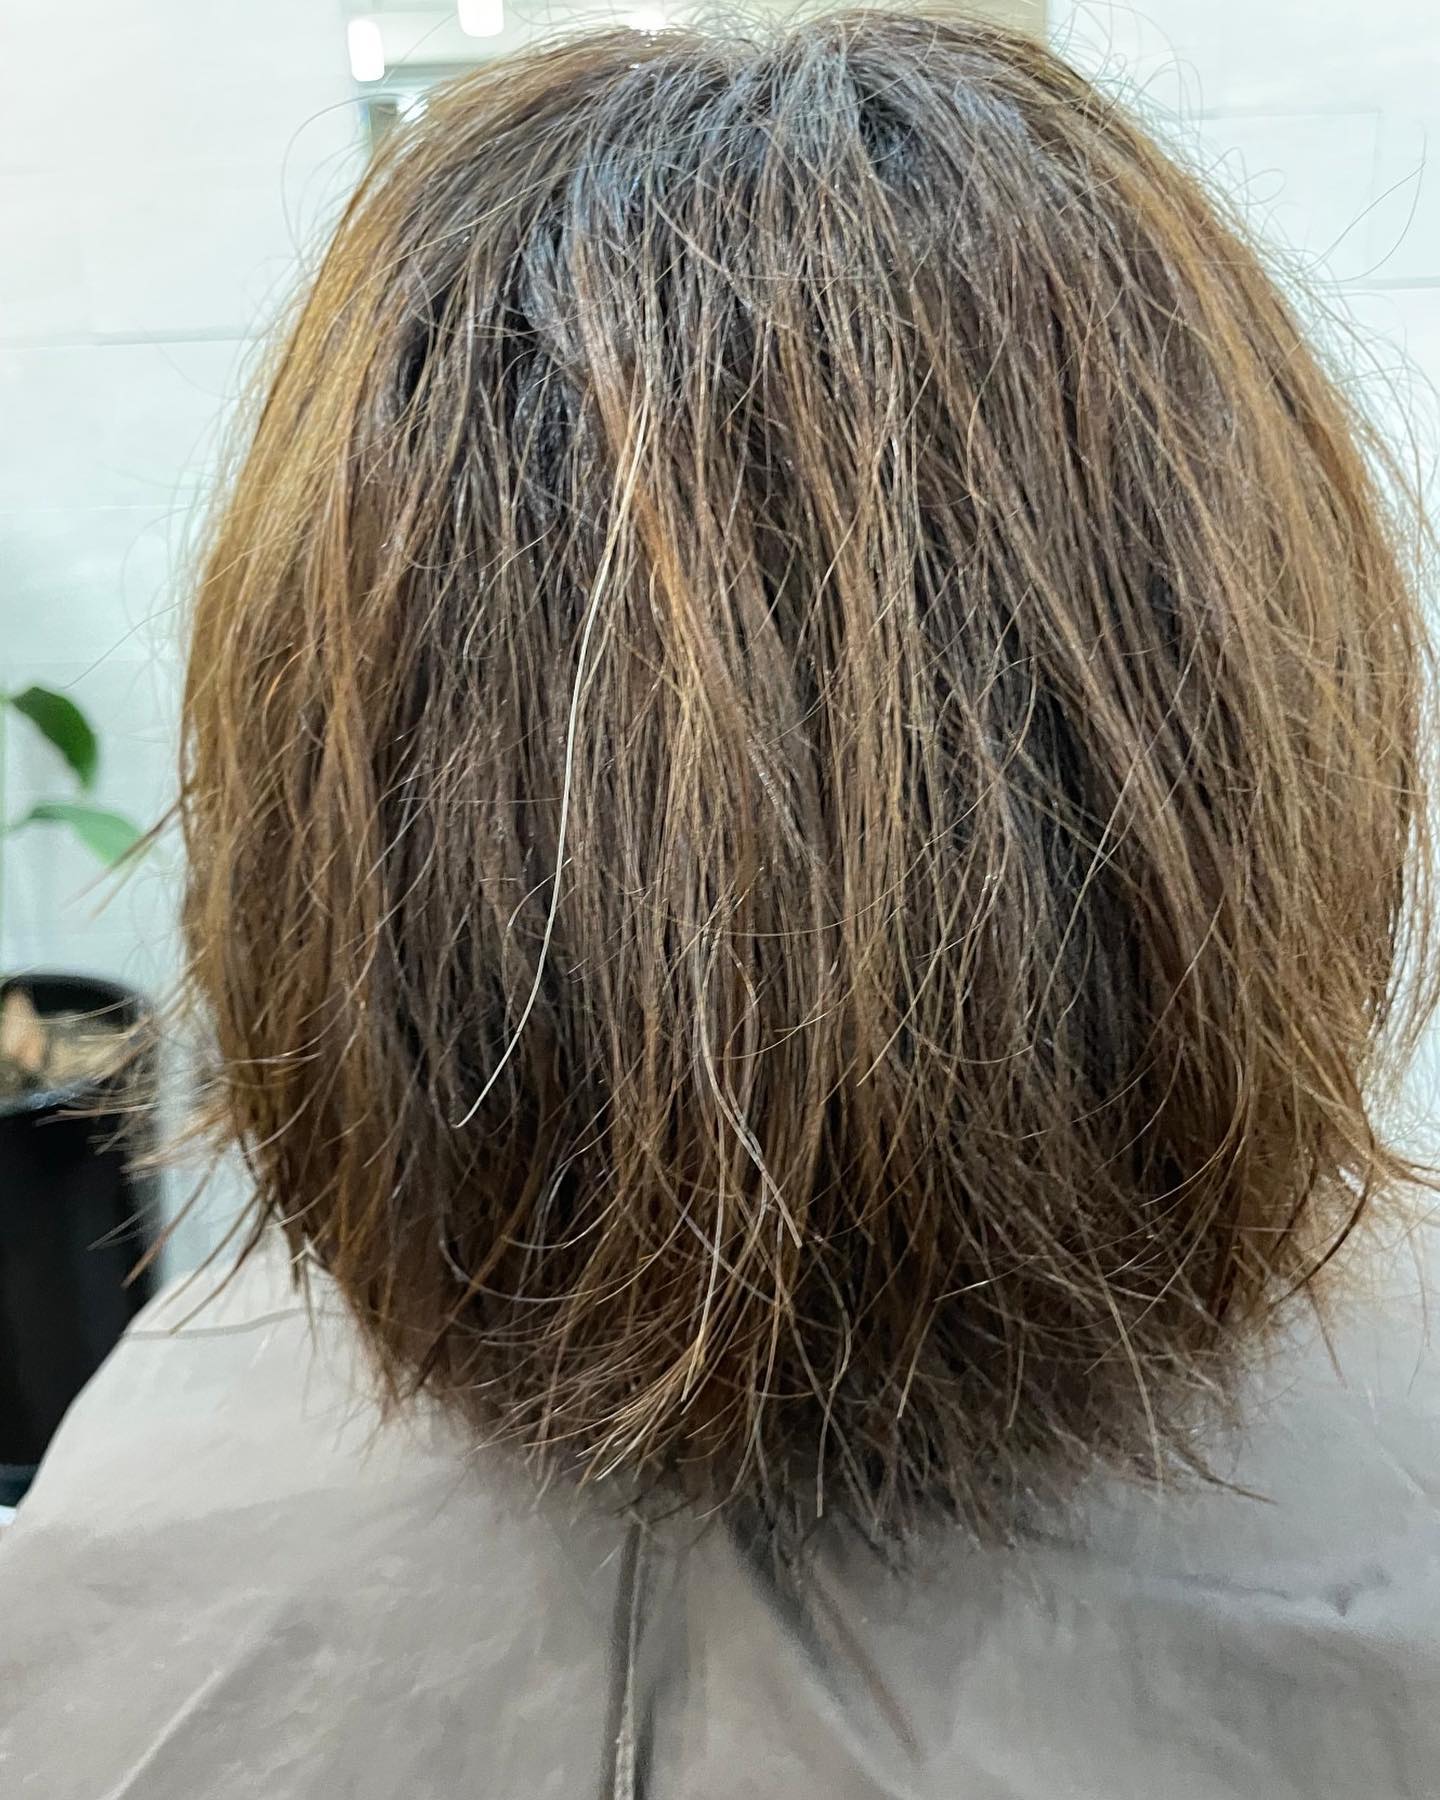 髪質改善エイジングストレート

︎１〜２ヶ月ごとのカラーリング

︎ホームケアもして
︎手触りも良し

しかし
︎パサつき
︎広がり
︎スタイリングに時間がかかる、、、
︎まっすぐしたいけど
ペタンコは嫌🤢

そんな、オーダーにお応えできる
エイジングケア
髪質改善ストレート
¥２２，０００〜

enzyme